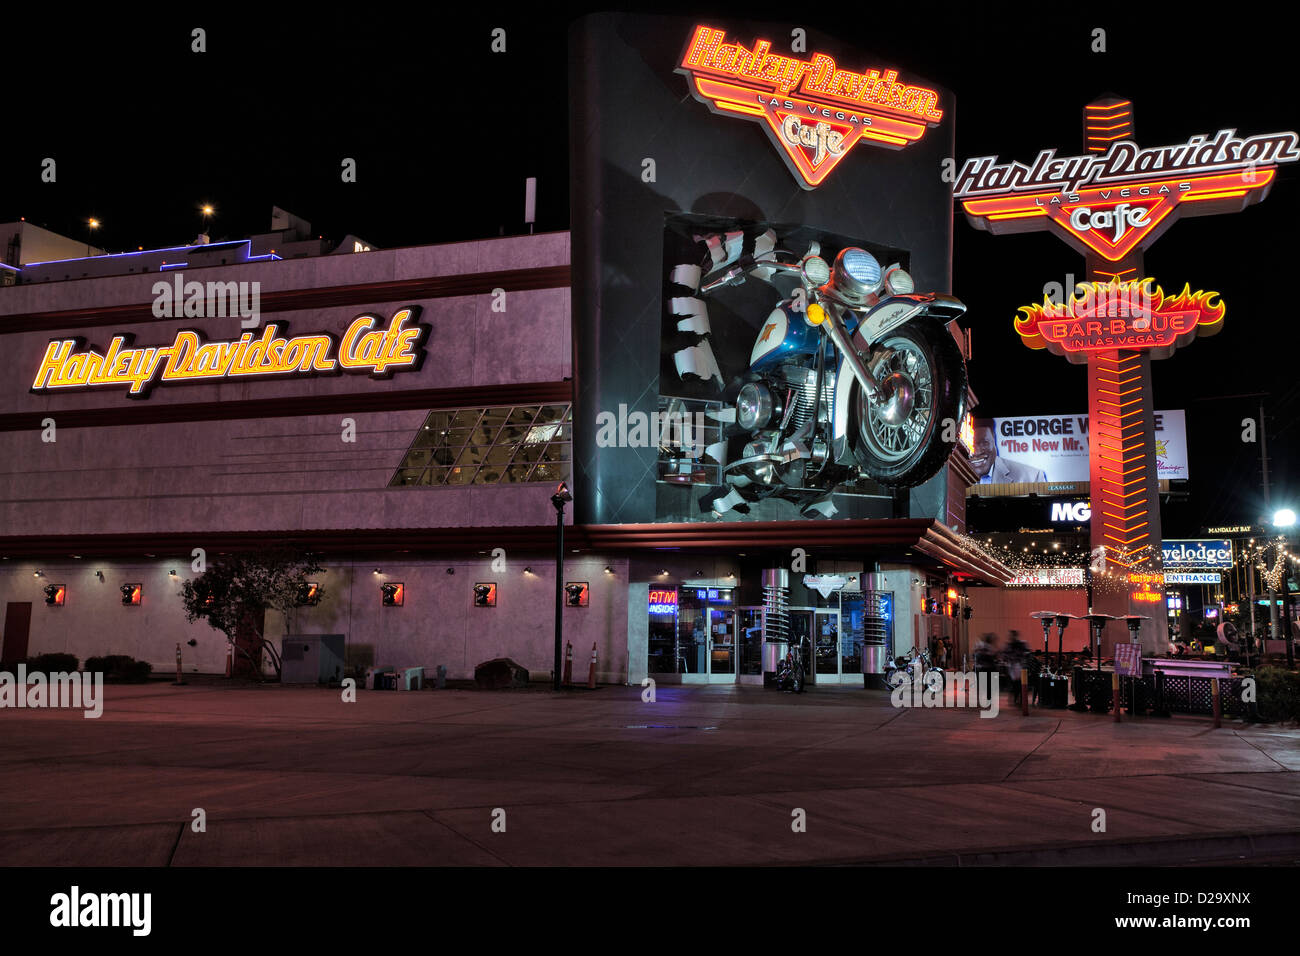 Harley Davidson motorcycle cafe on Las Vegas Blvd. at night-Las Vegas, Nevada, USA. Stock Photo